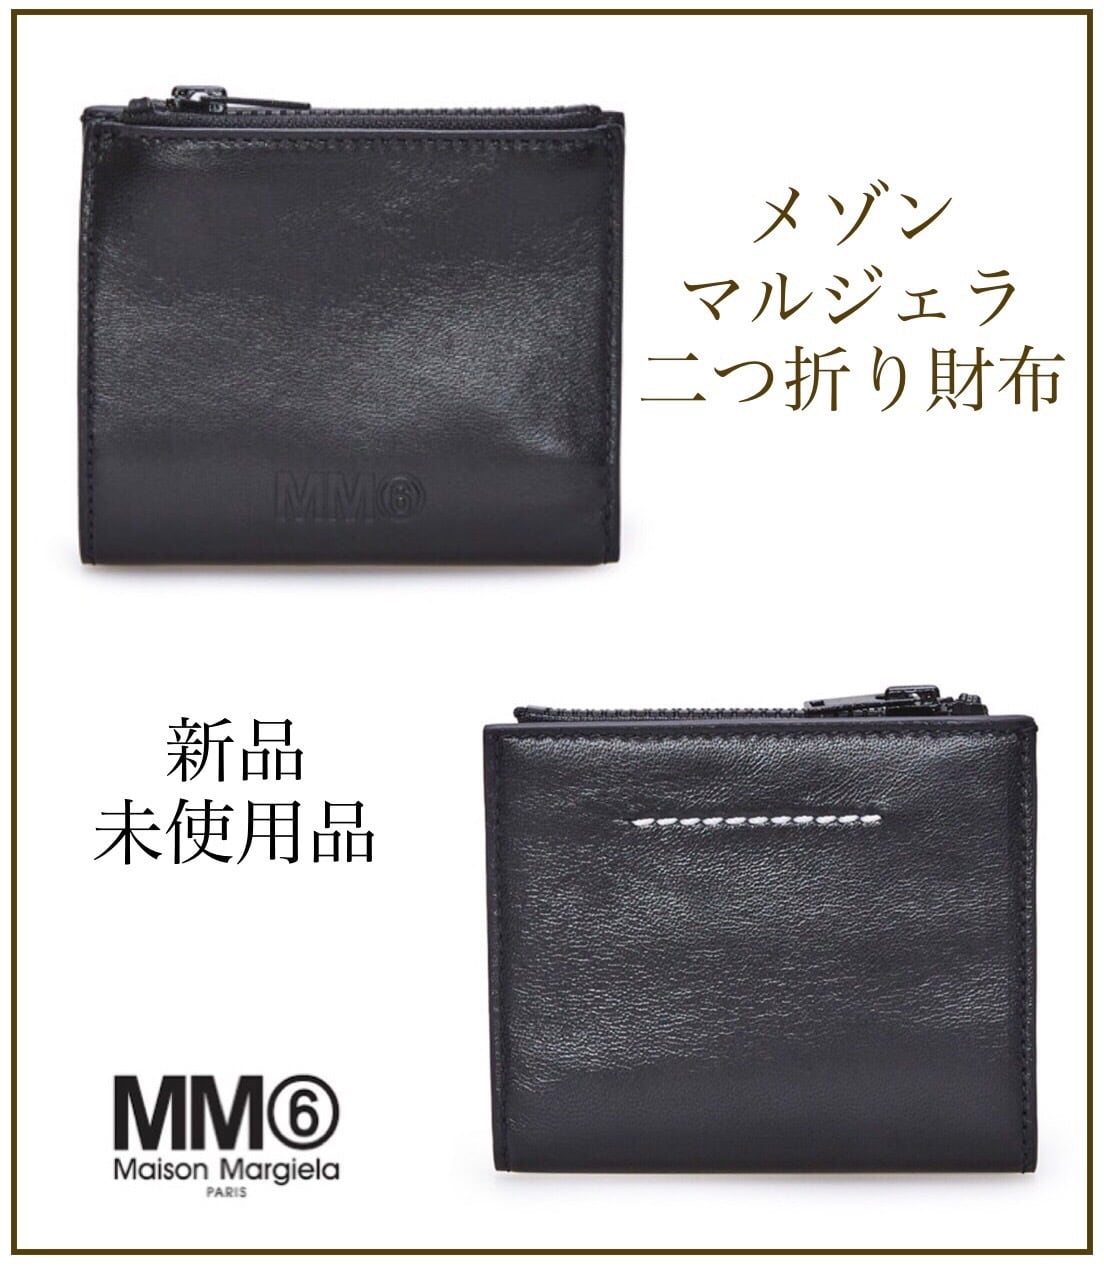 【正規品保証】新品 MM6 メゾンマルジャラ ２つ折り財布 ブラックブランドDAIJU